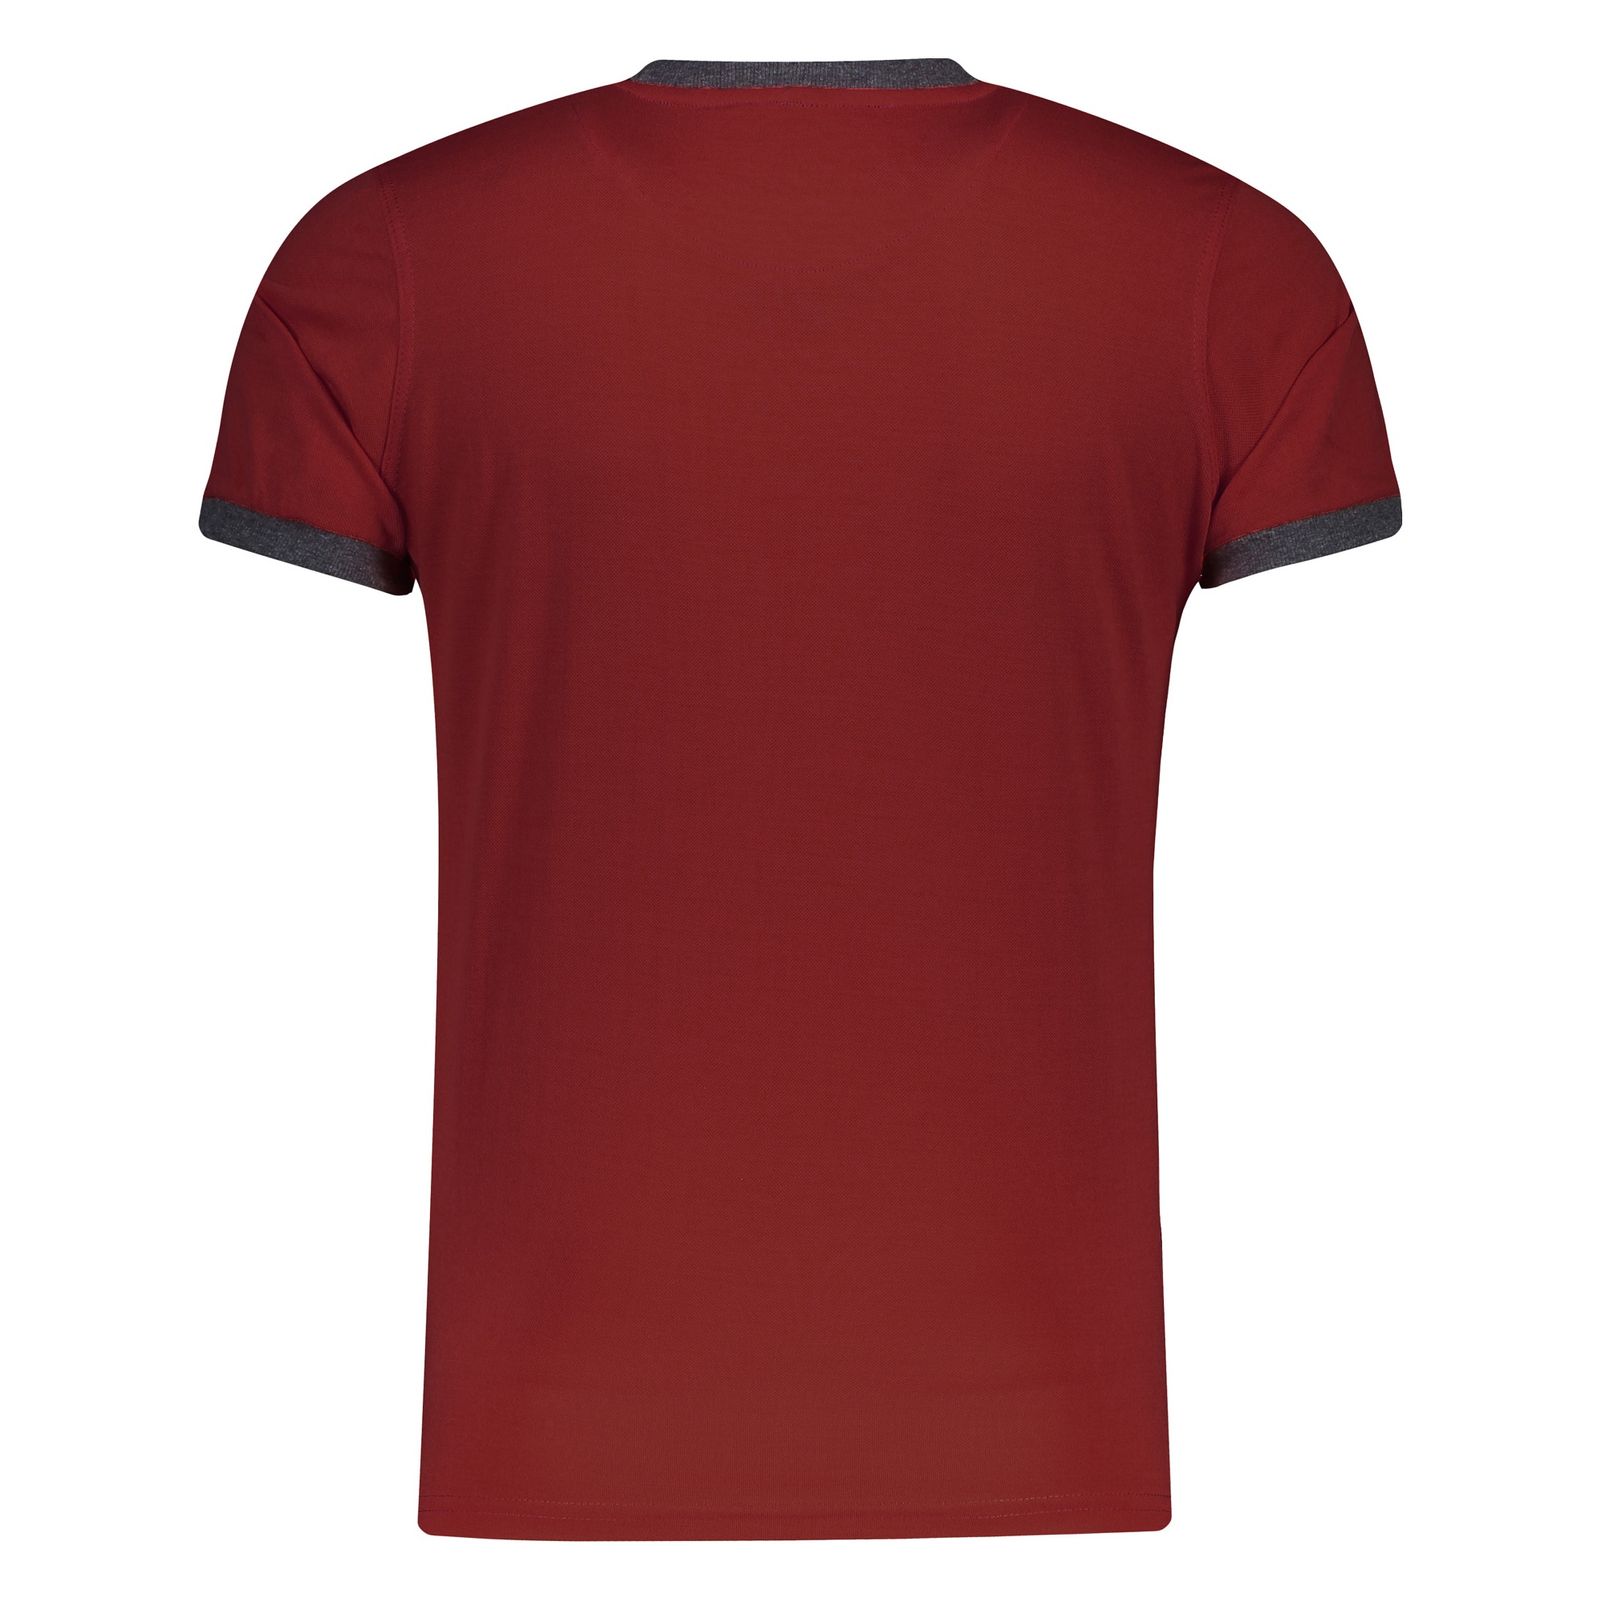 تی شرت ورزشی مردانه بی فور ران مدل 980311-74 - قرمز تیره - 3